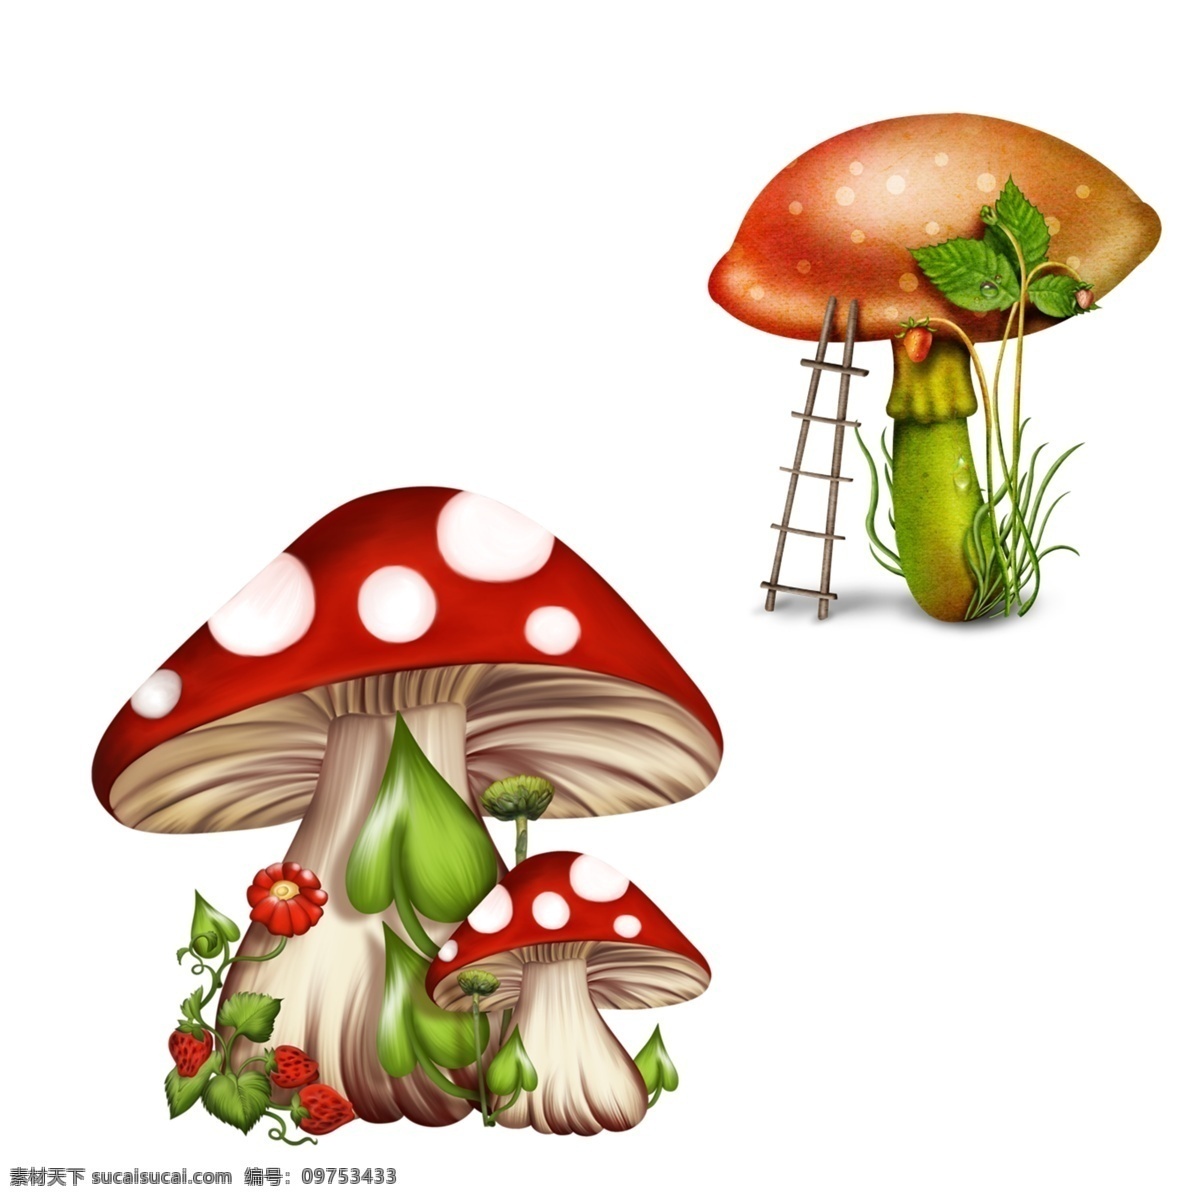 卡通蘑菇 蘑菇 卡通 插画 蘑菇插画